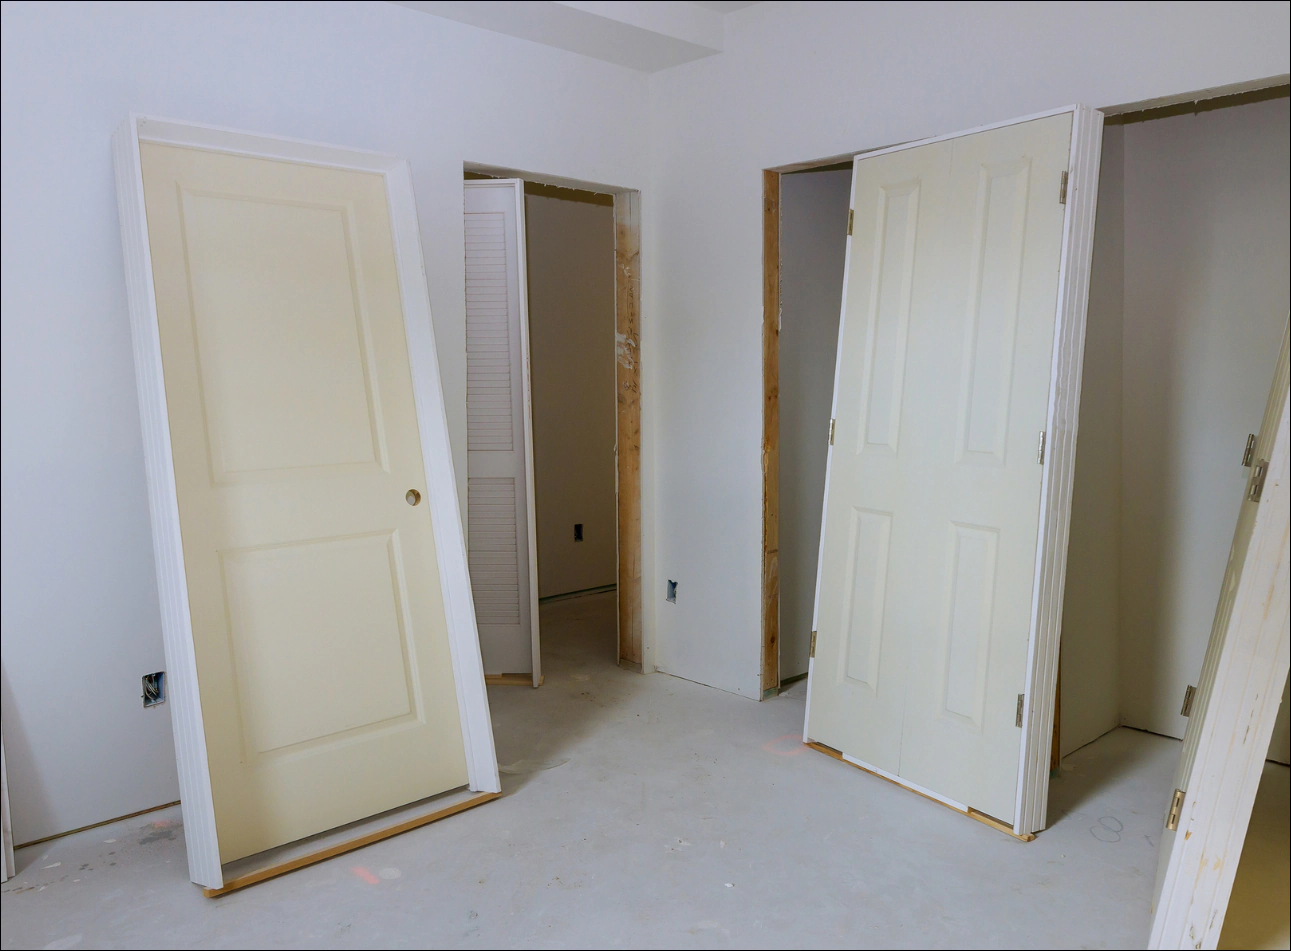 doors being installed